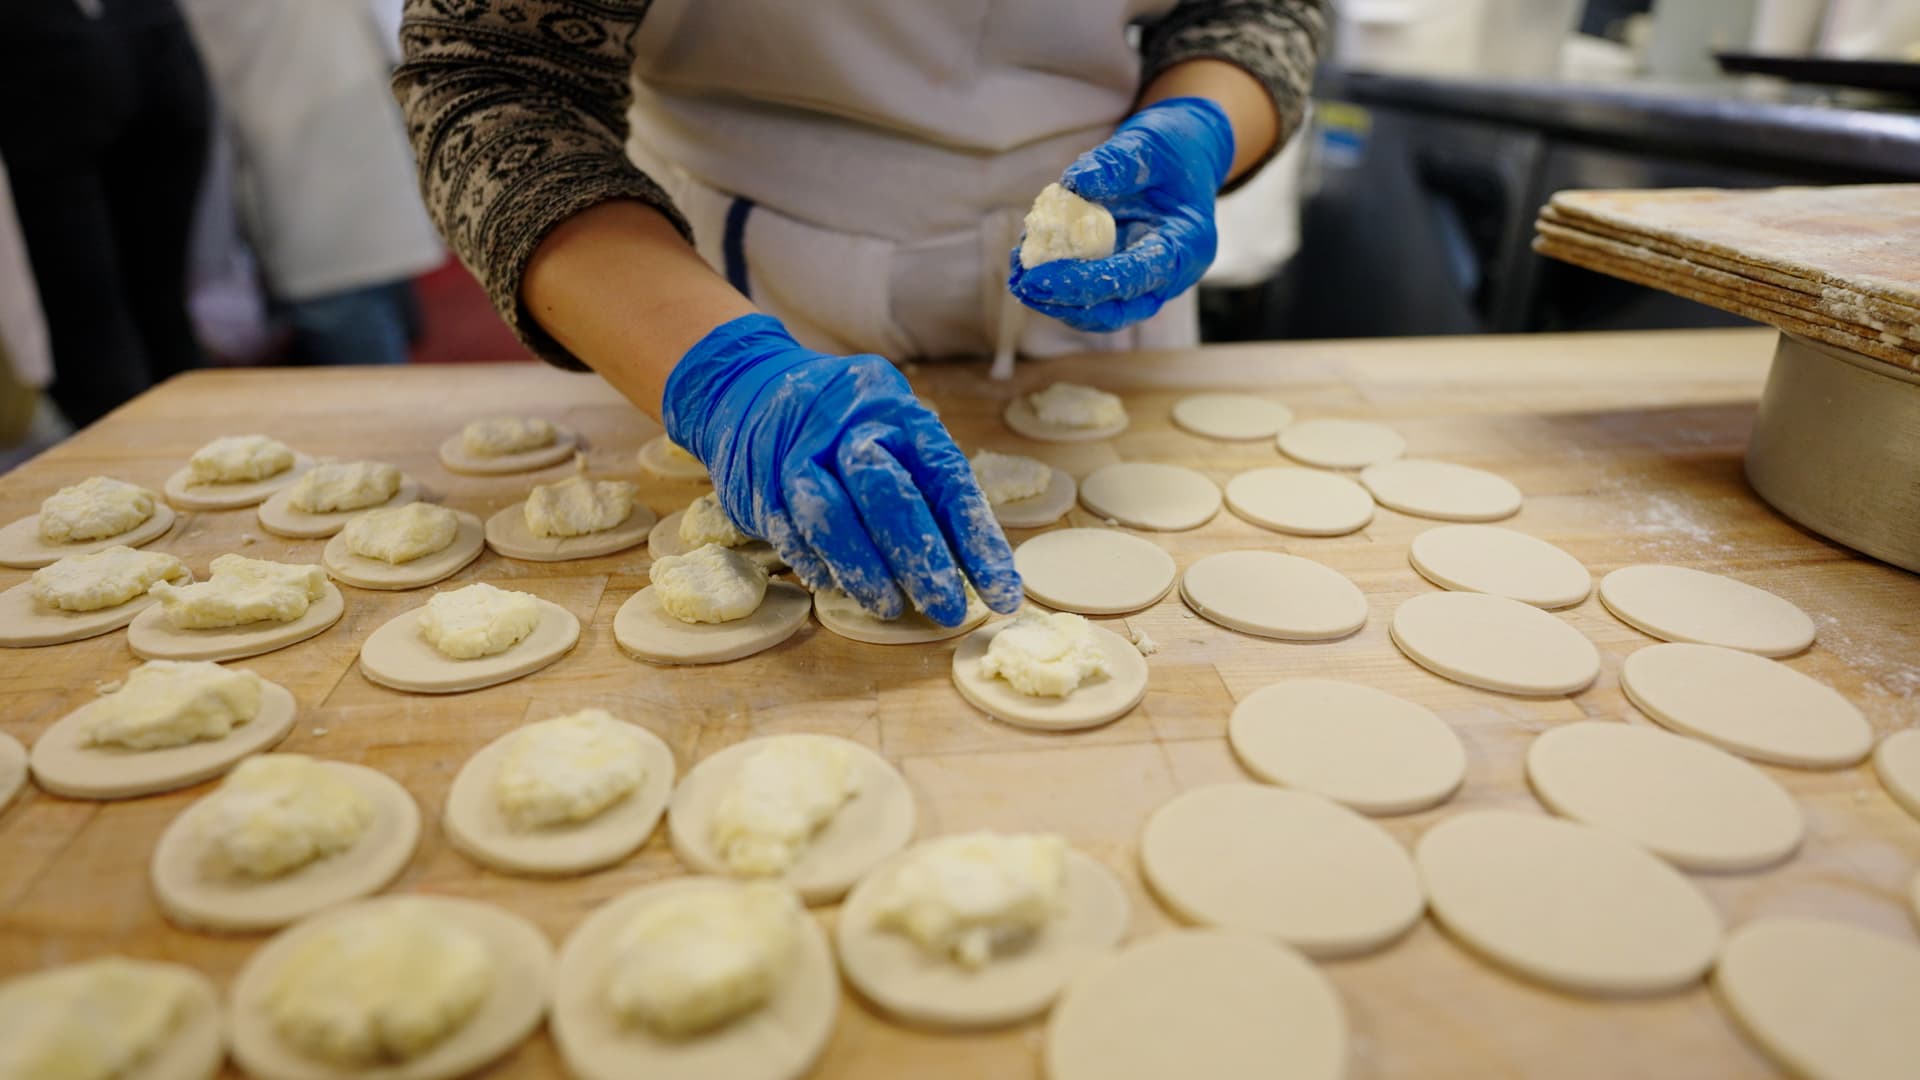 Veselka employee handmaking perogies, the Ukrainian restaurant's specialty